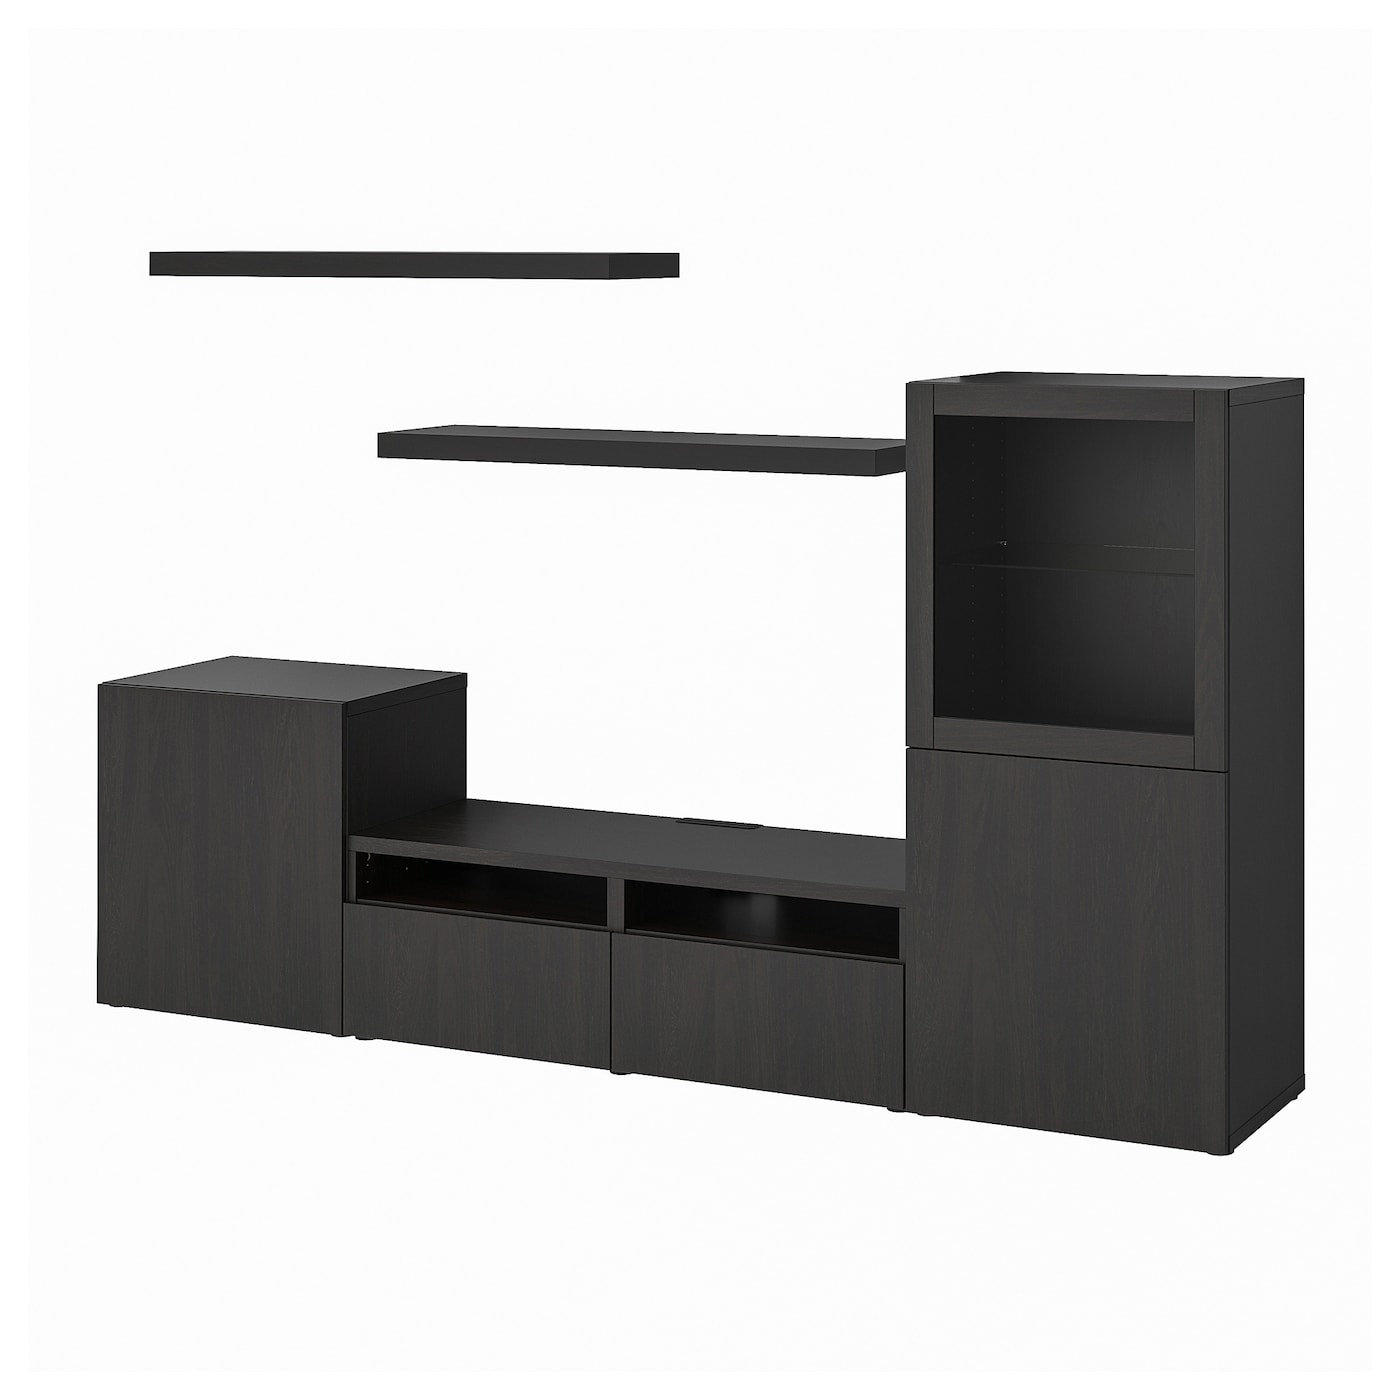 Bestå / Lack Combinaison Meuble Tv - Brun Noir - Ikea Suisse à Ikea Meuble